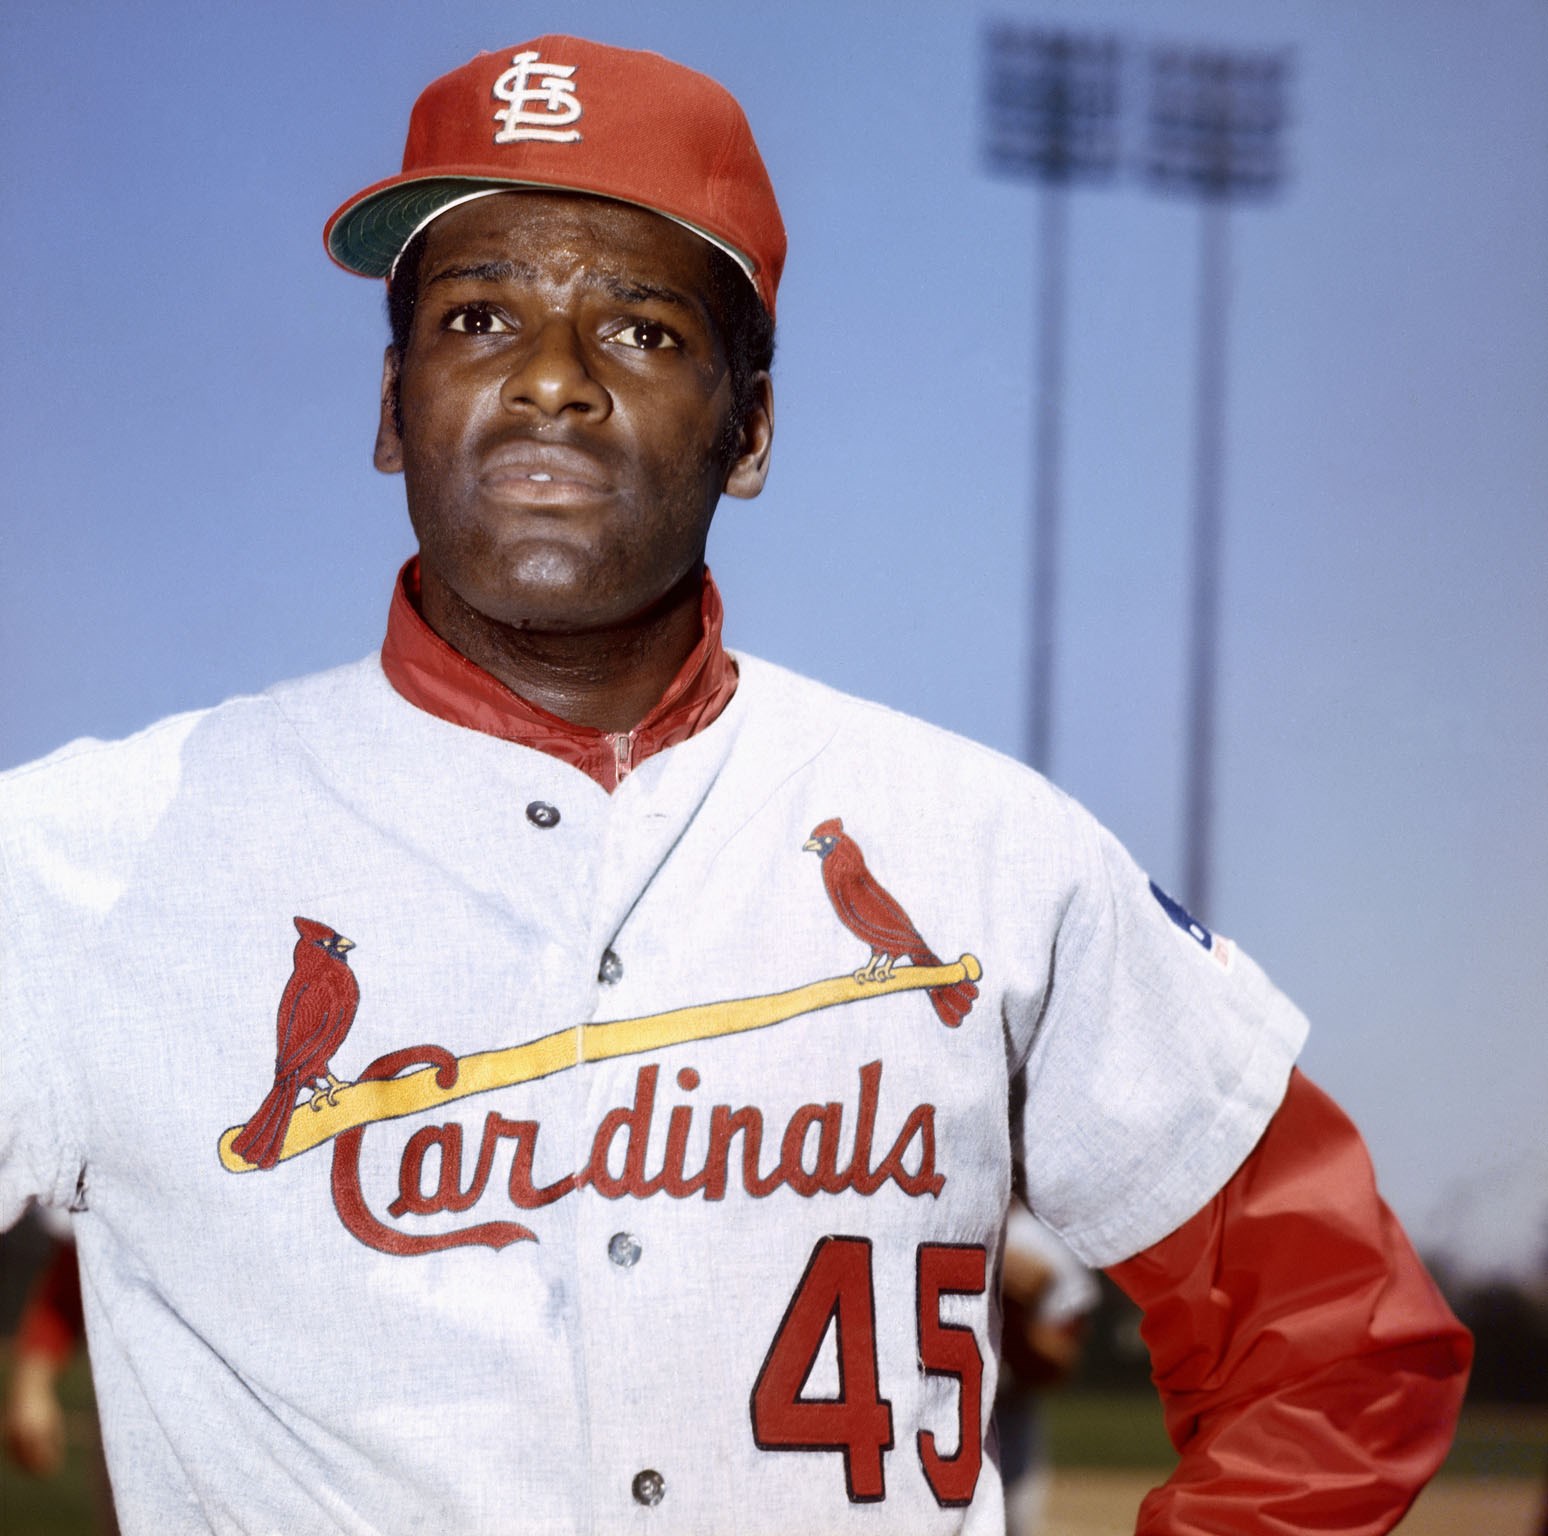 Bob Gibson, legendary St. Louis Cardinals pitcher and Baseball